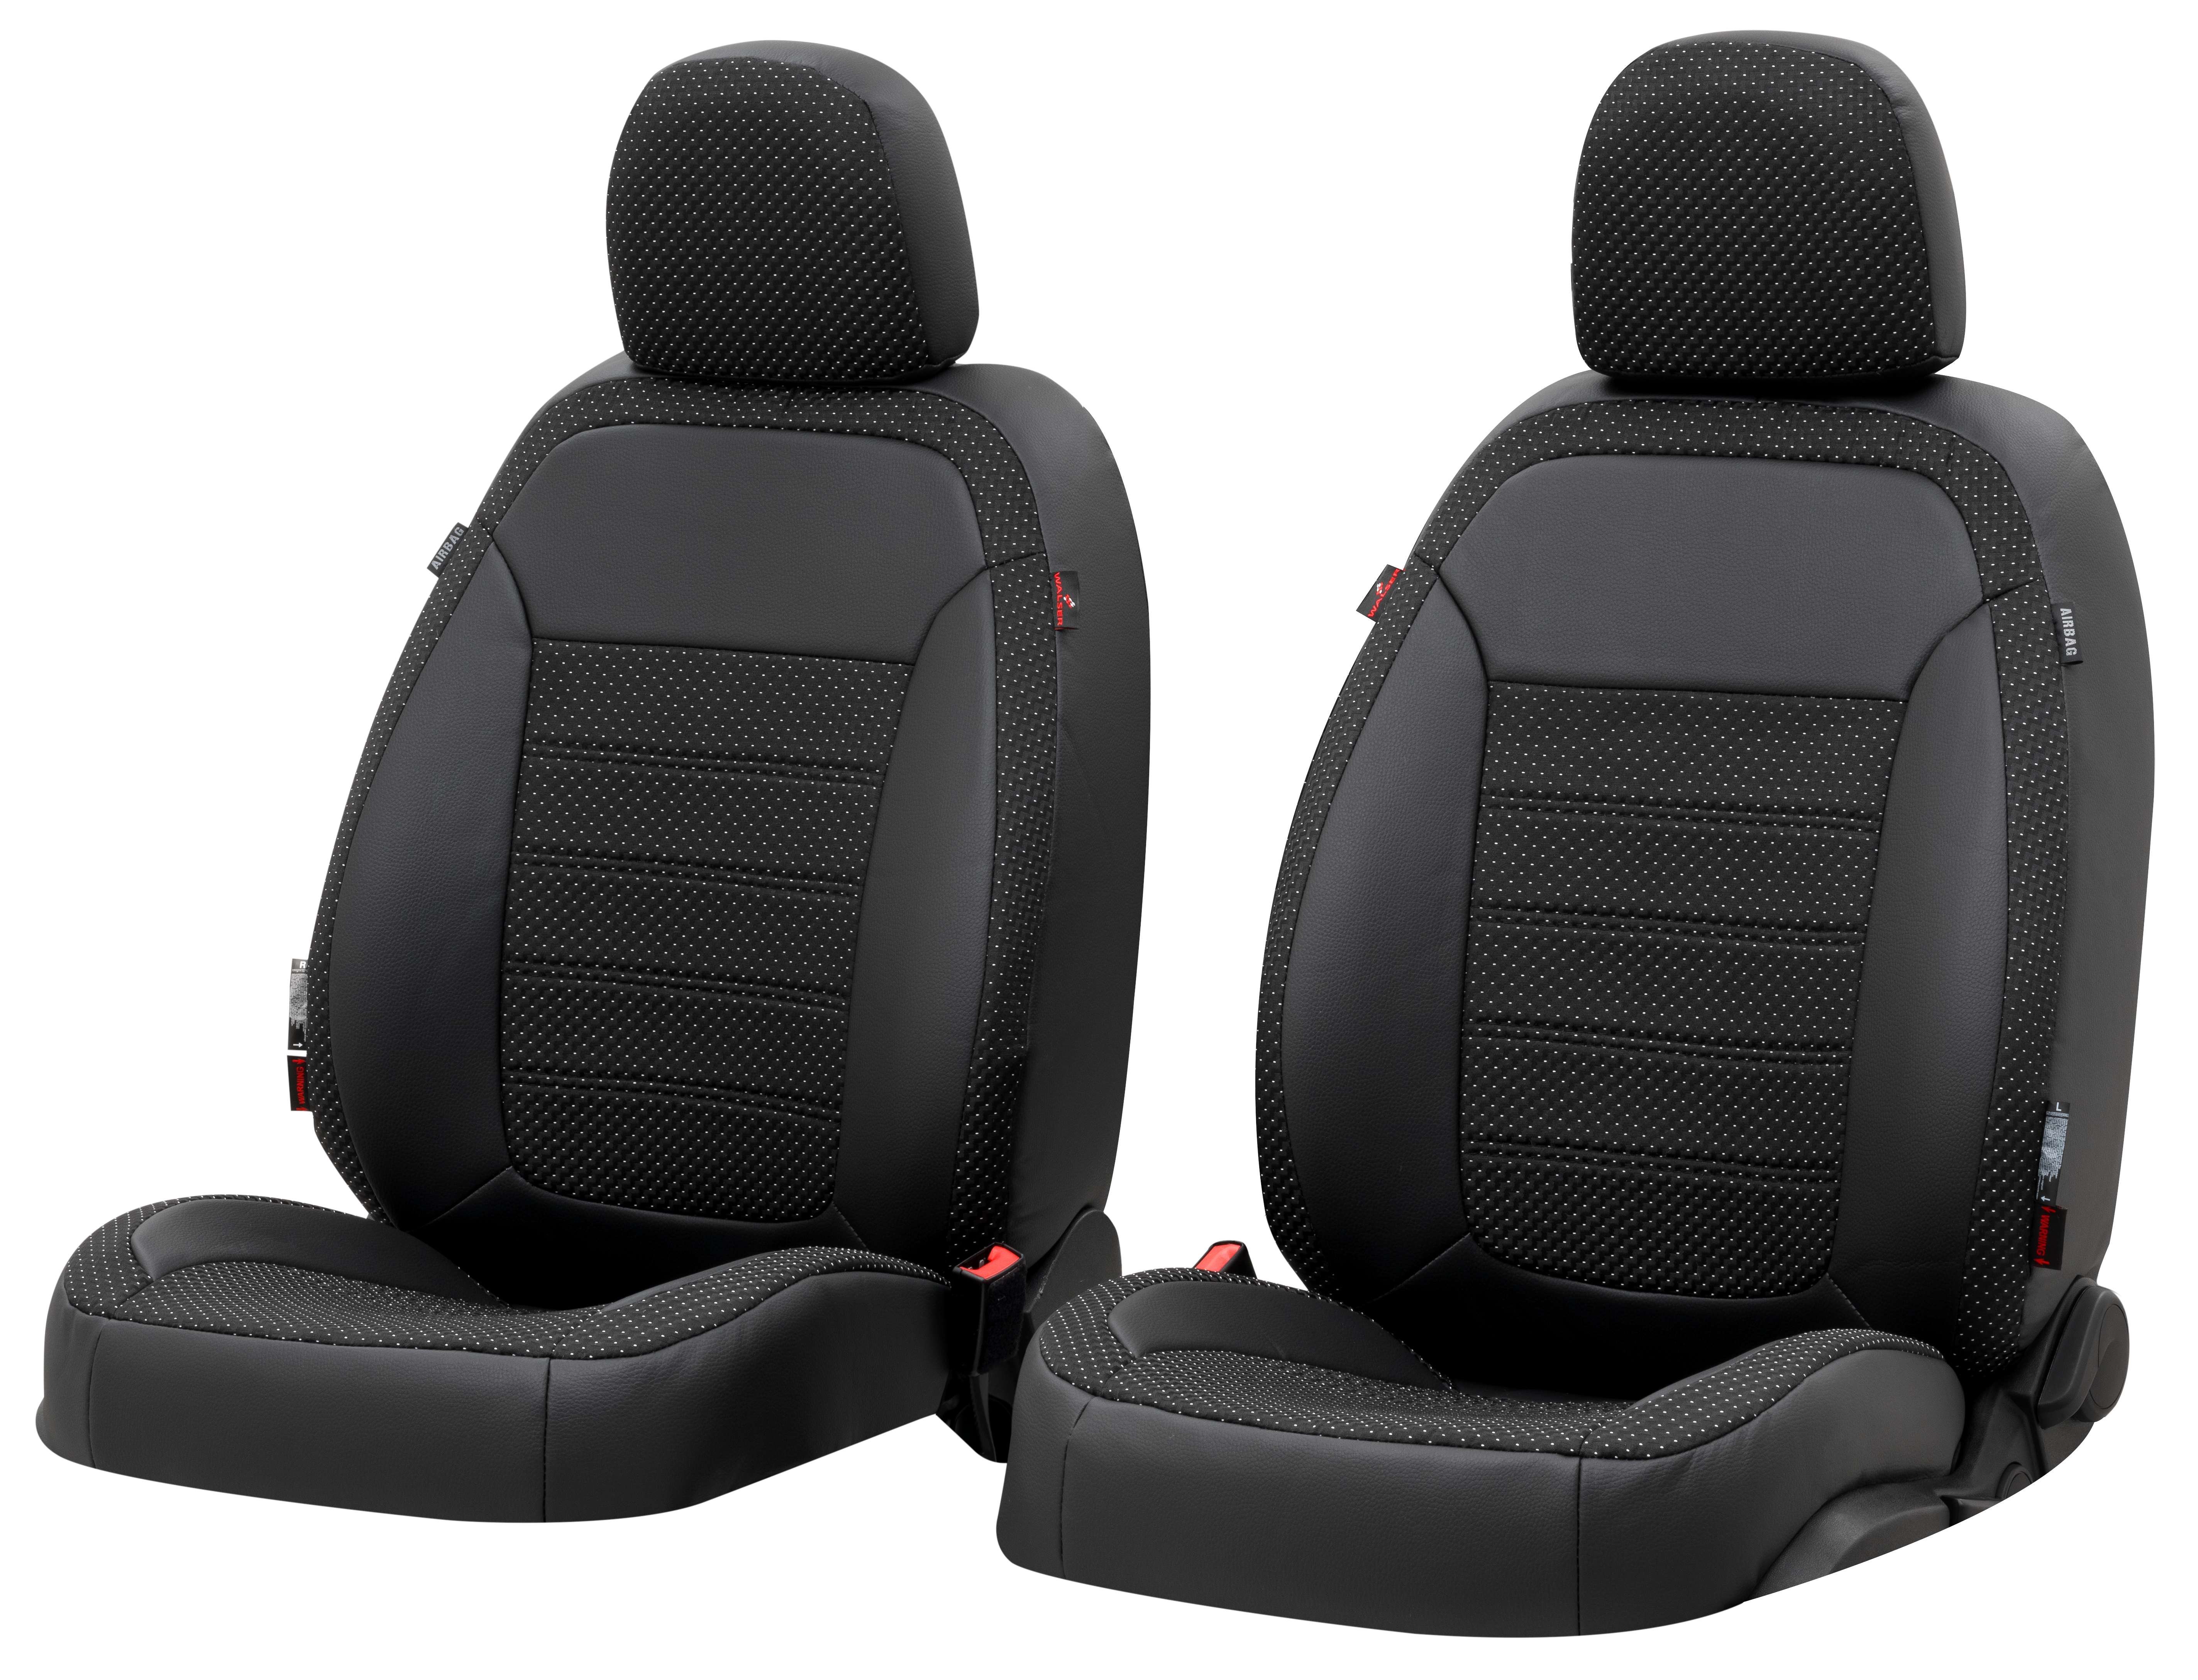 Coprisedile \"Torino\"" per Fiat 500X anno 2015 fino ad oggi - 2 coprisedili per sedili normali"